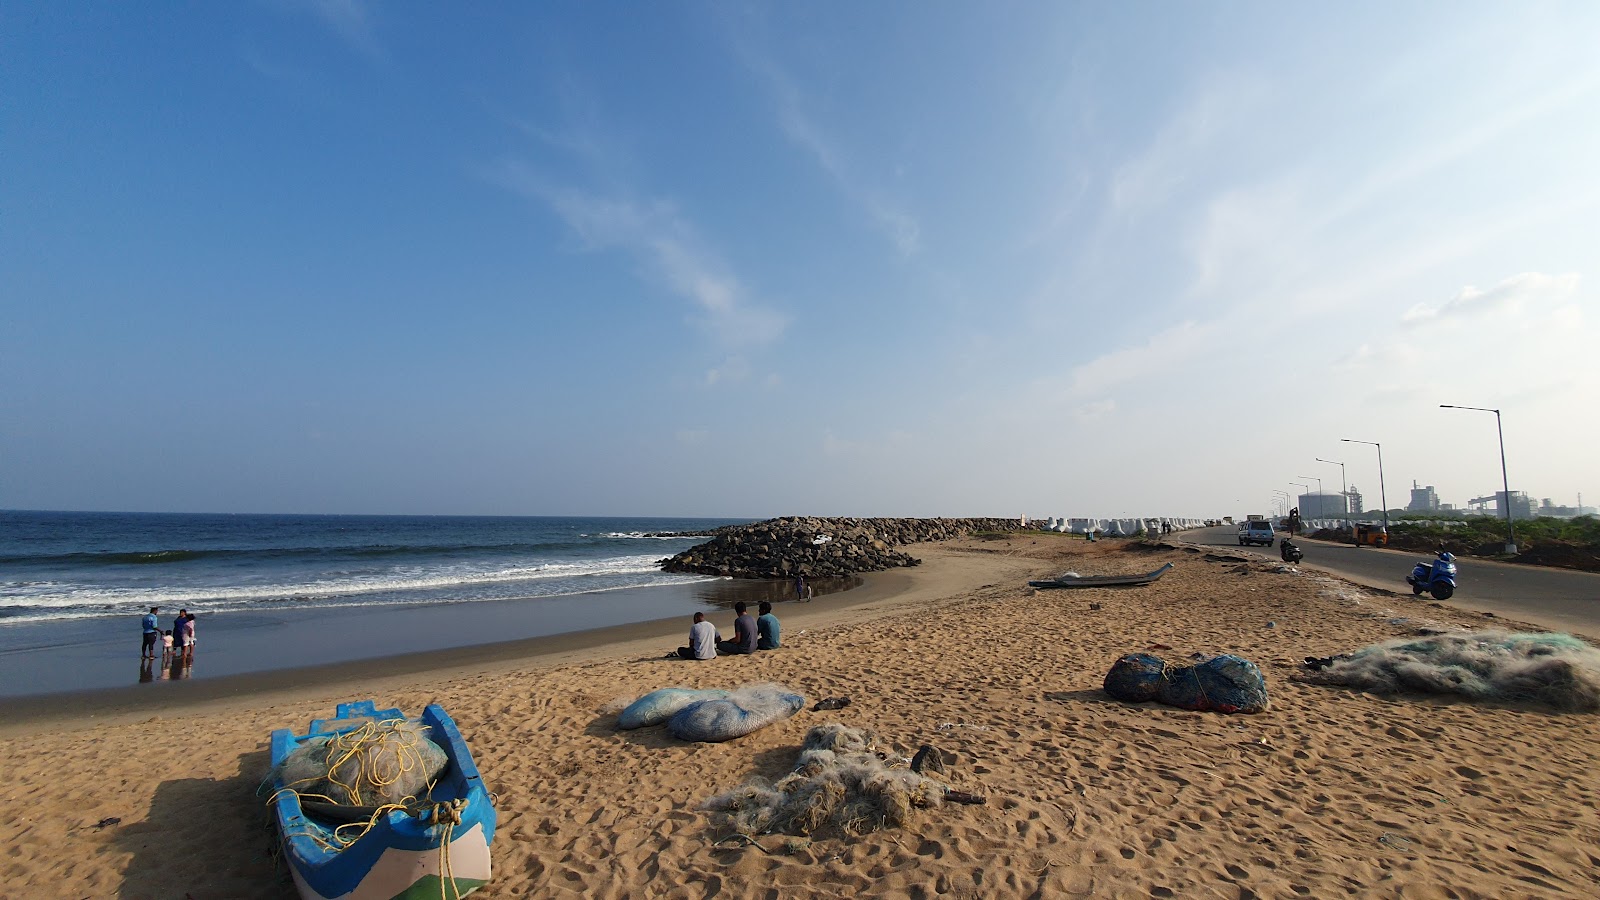 Φωτογραφία του Ennore Thazankuppam Breakwater Beach View με επίπεδο καθαριότητας εν μέρει καθαρό